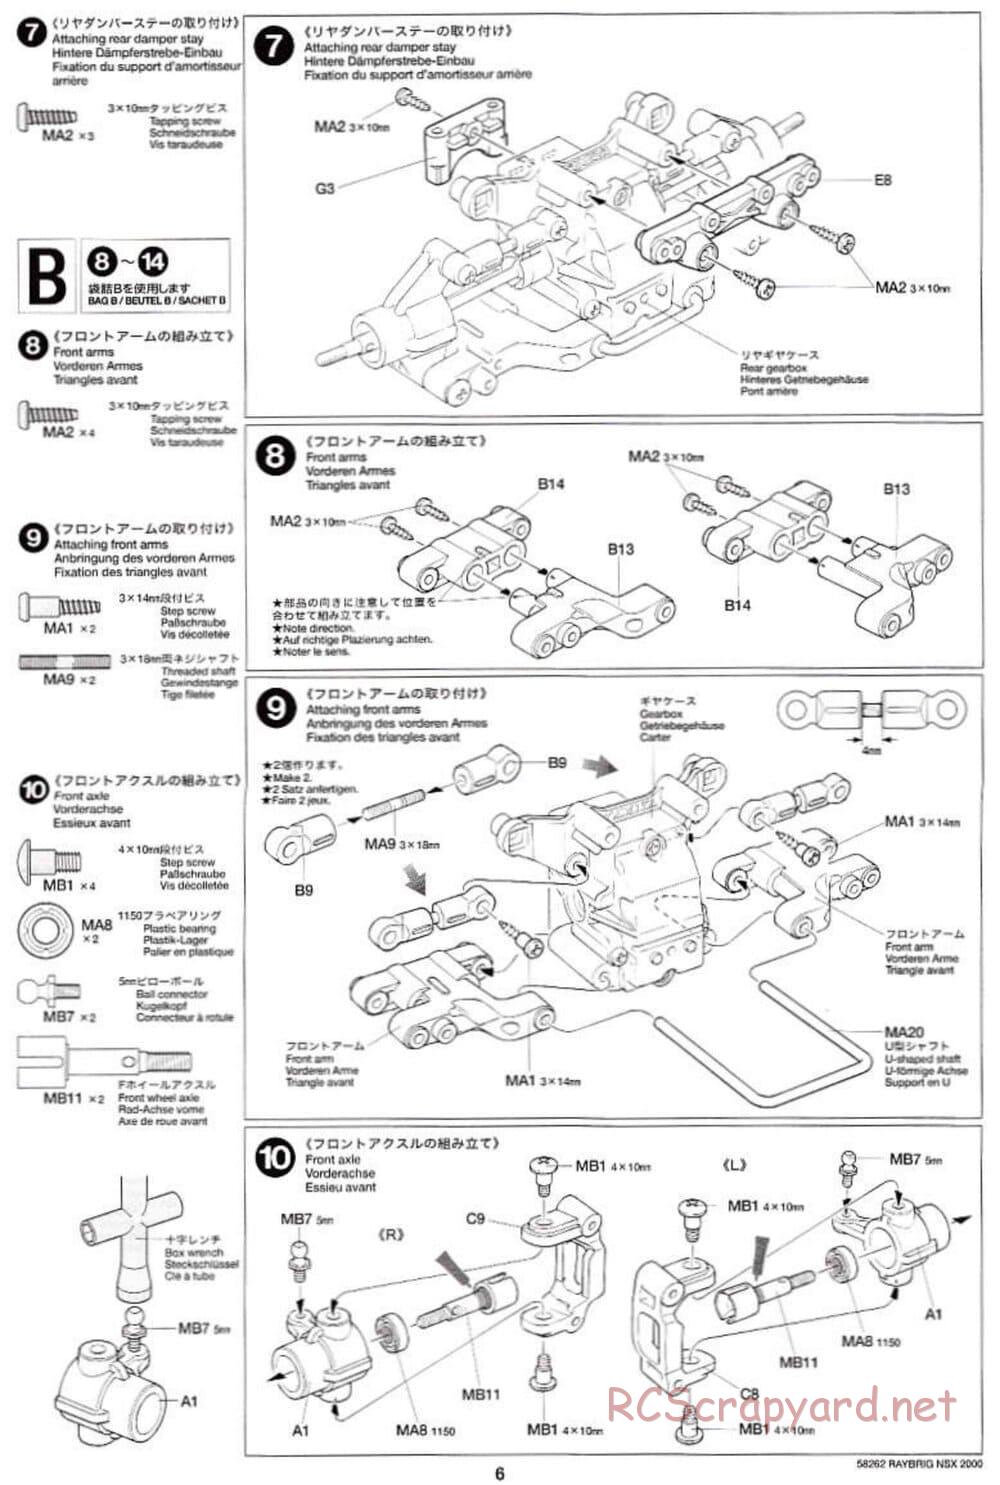 Tamiya - Raybrig NSX 2000 - TB-01 Chassis - Manual - Page 6